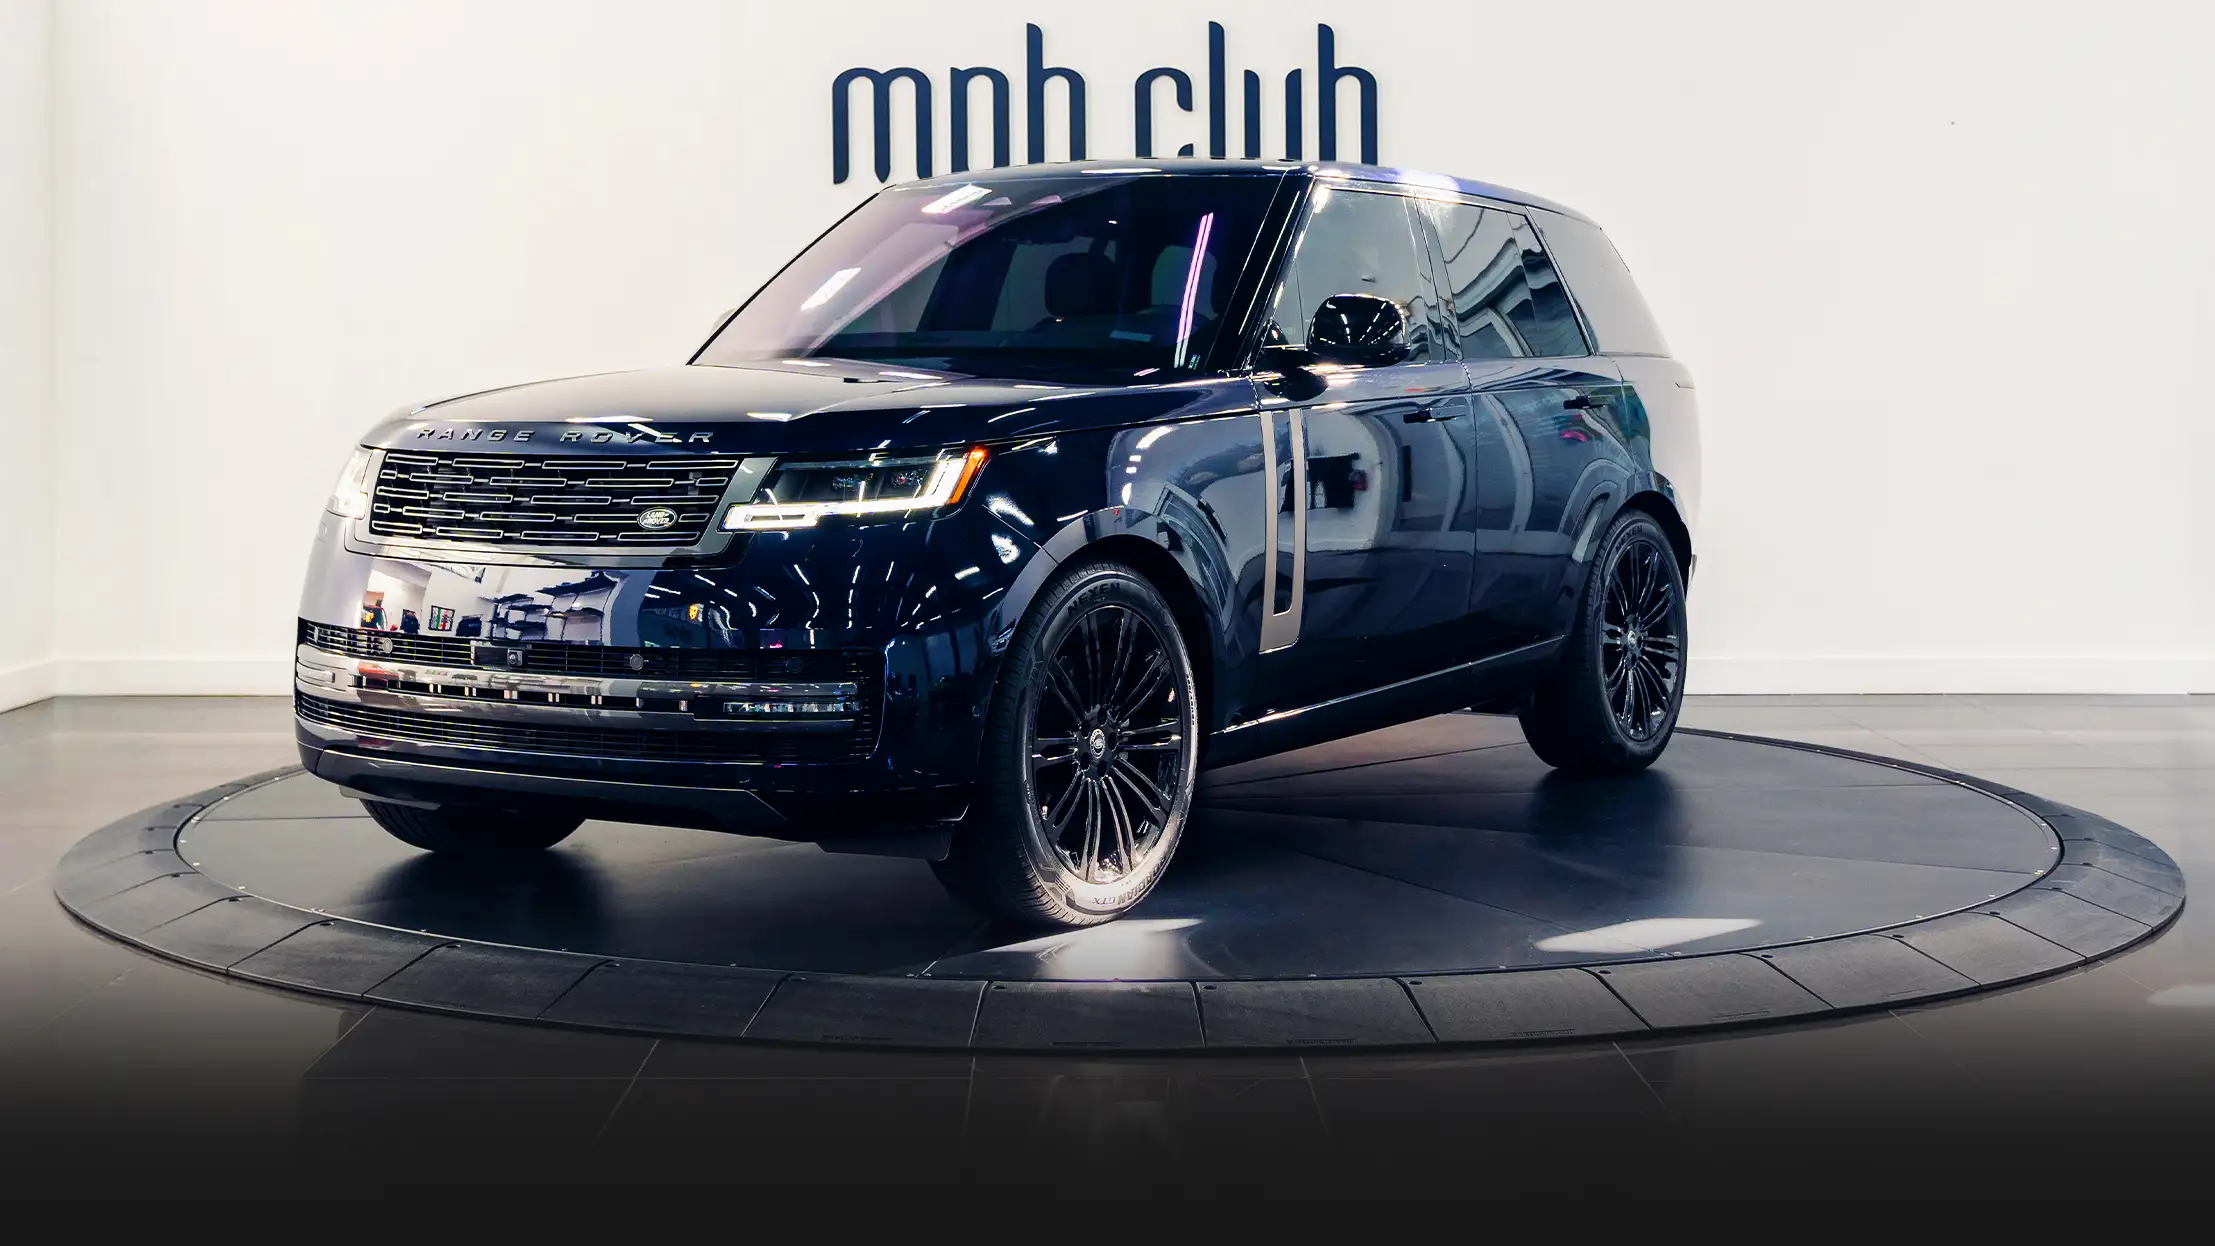 Blue Range Rover rental Miami profile view mph club